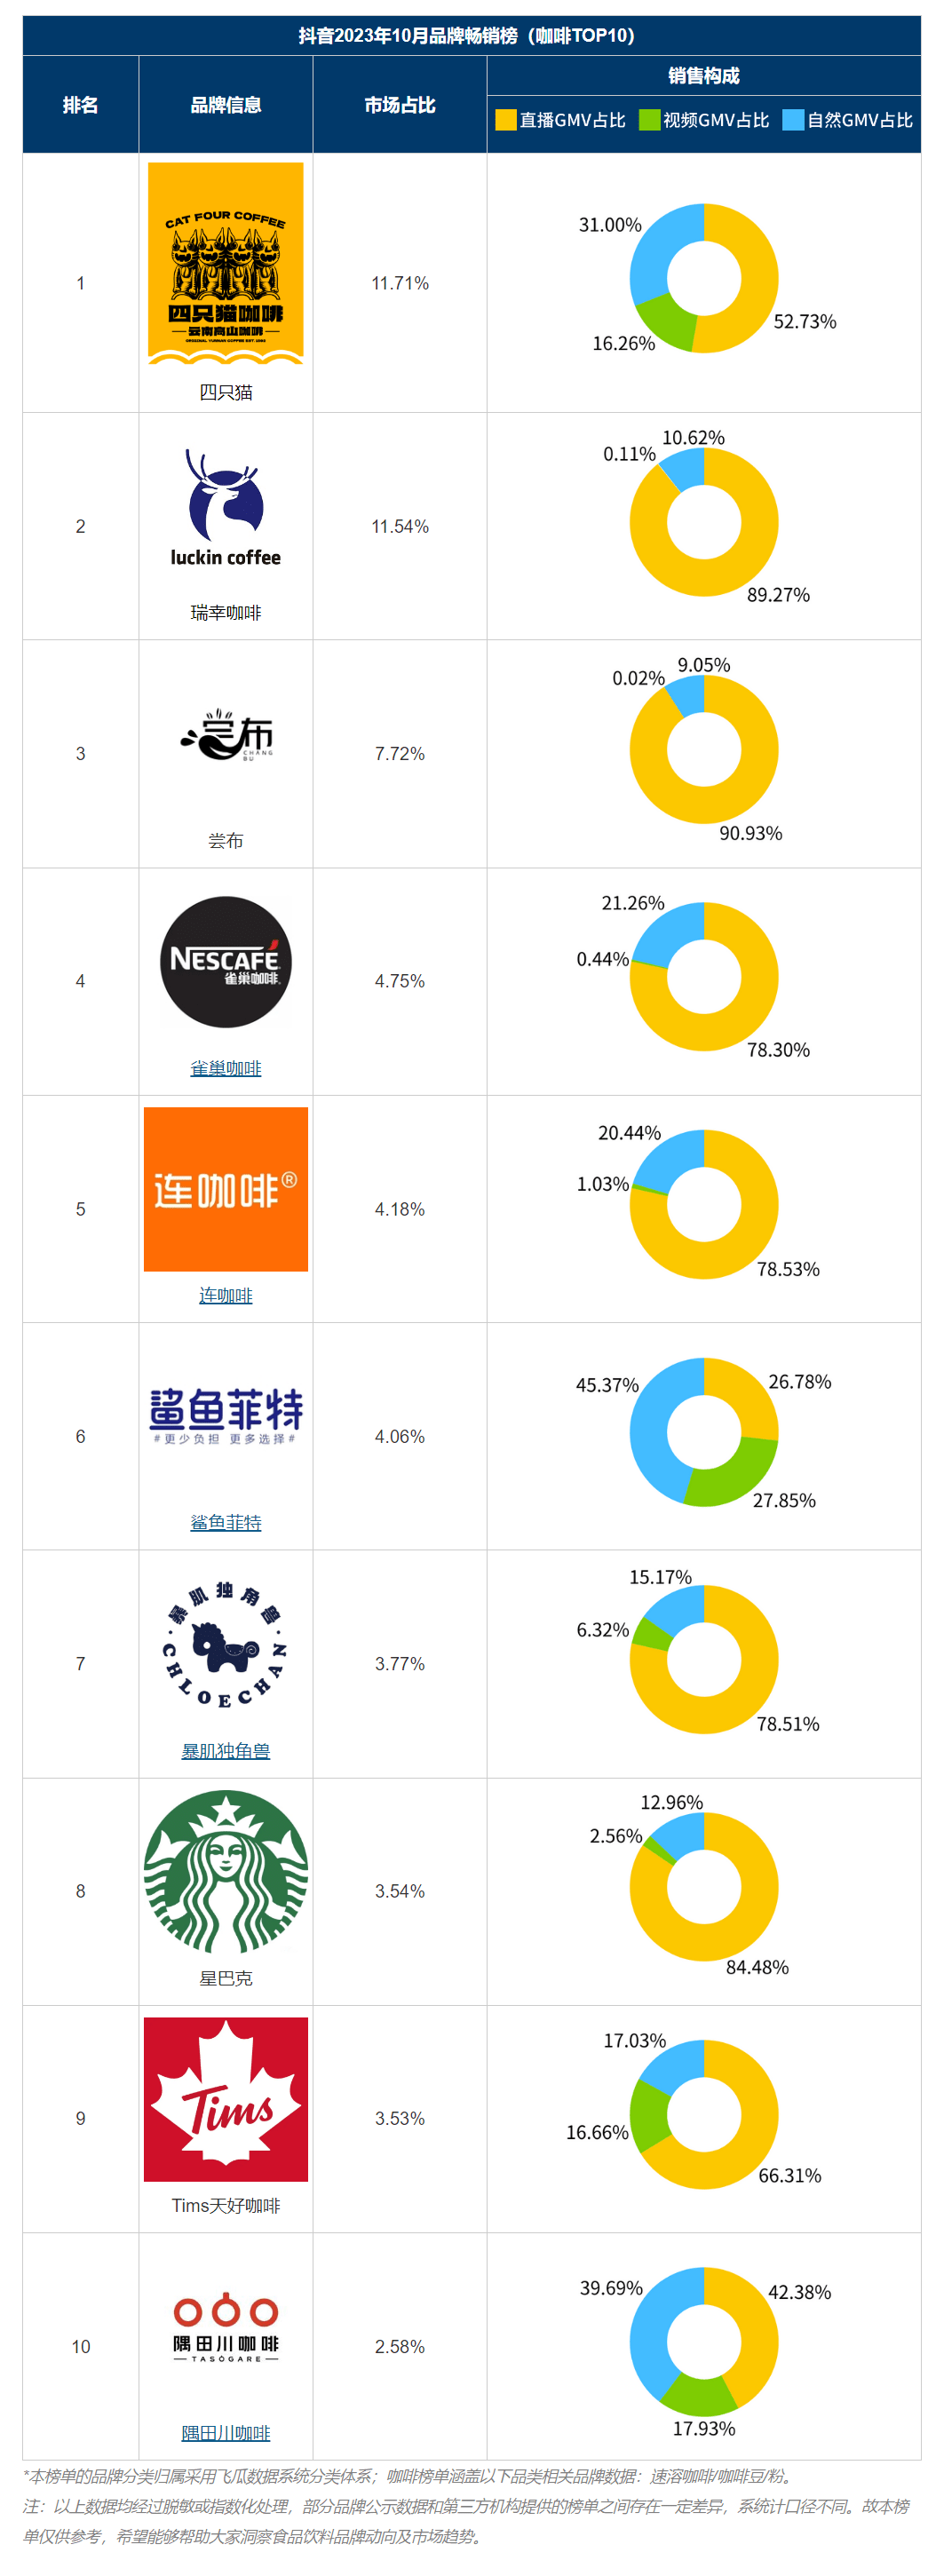 品牌饮品排行榜_茶饮料评分!中国瓶装茶饮TOP10公布:统一第5,三得利位居第2